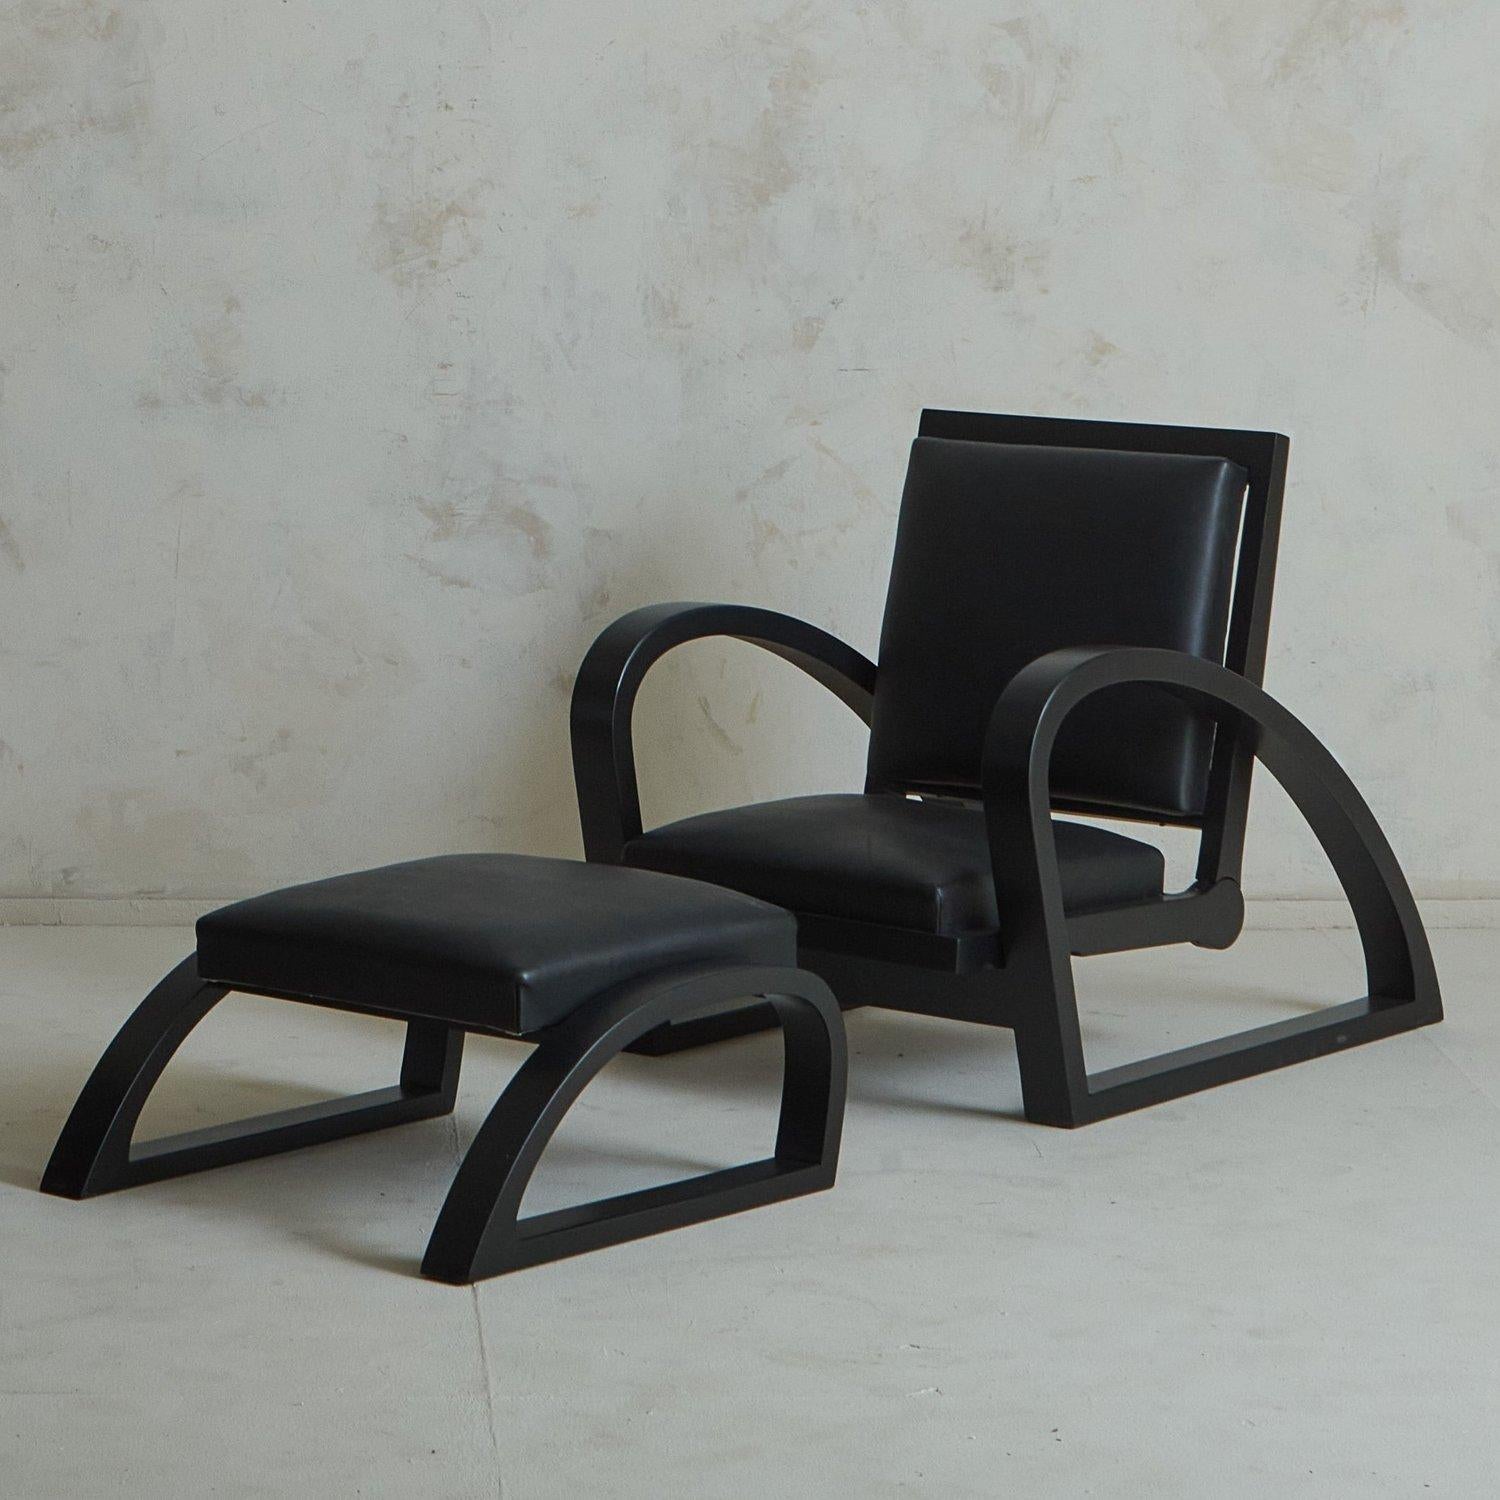 Ein französischer Sessel aus den 1940er Jahren, der Francis Jourdain zugeschrieben wird. Dieser skulpturale Loungesessel hat einen schwarzen Holzrahmen mit dramatischen Kurven, der sich in verschiedene Positionen verstellen lässt. Sitz und